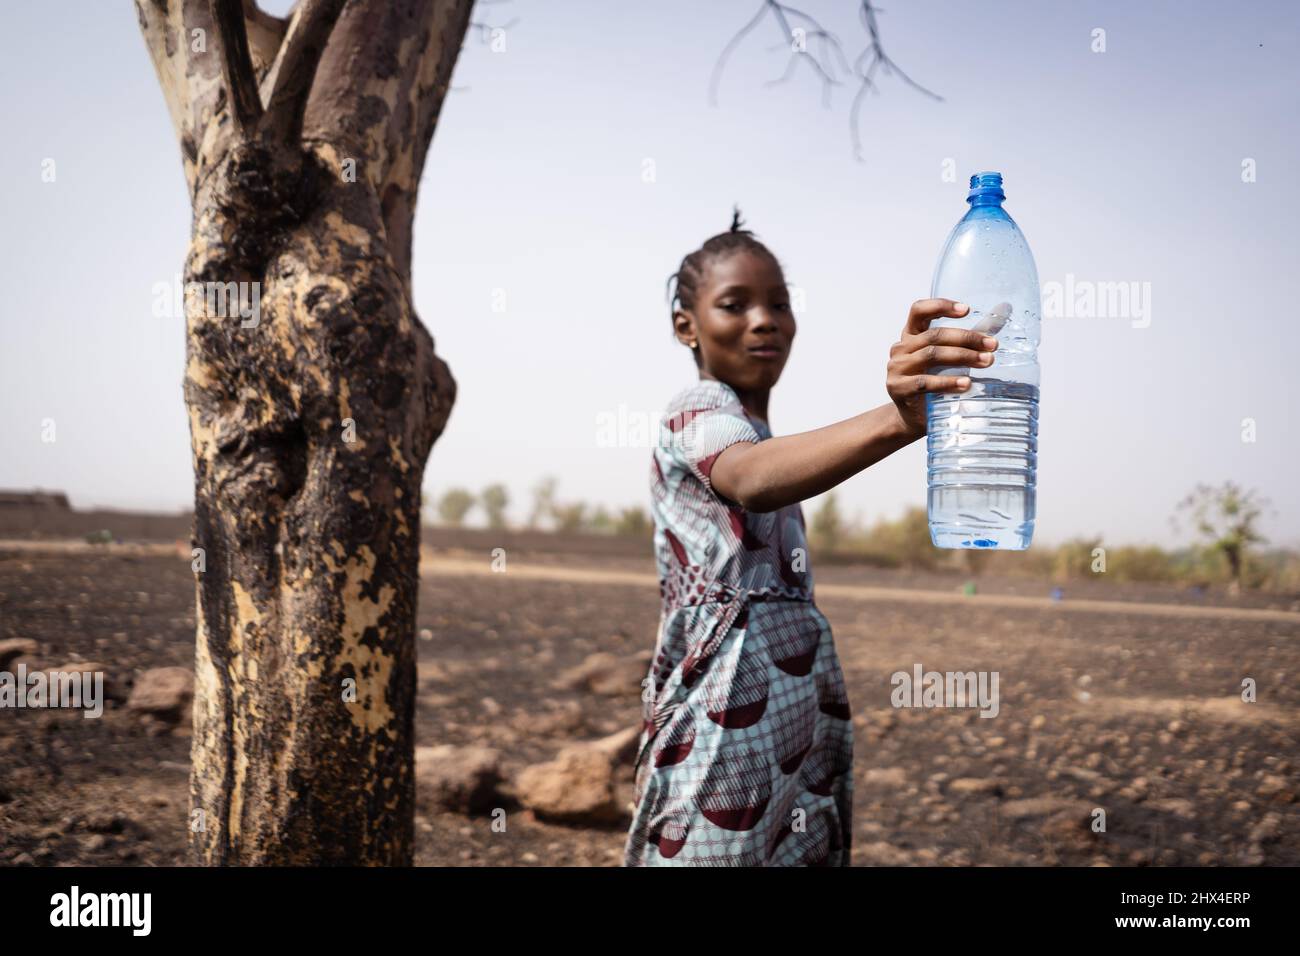 Carina ragazza di villaggio africano con un boccale grande di acqua nella sua bocca e tenendo aloft una bottiglia di plastica, raccomandando l'uso di drinki pulito e fresco Foto Stock